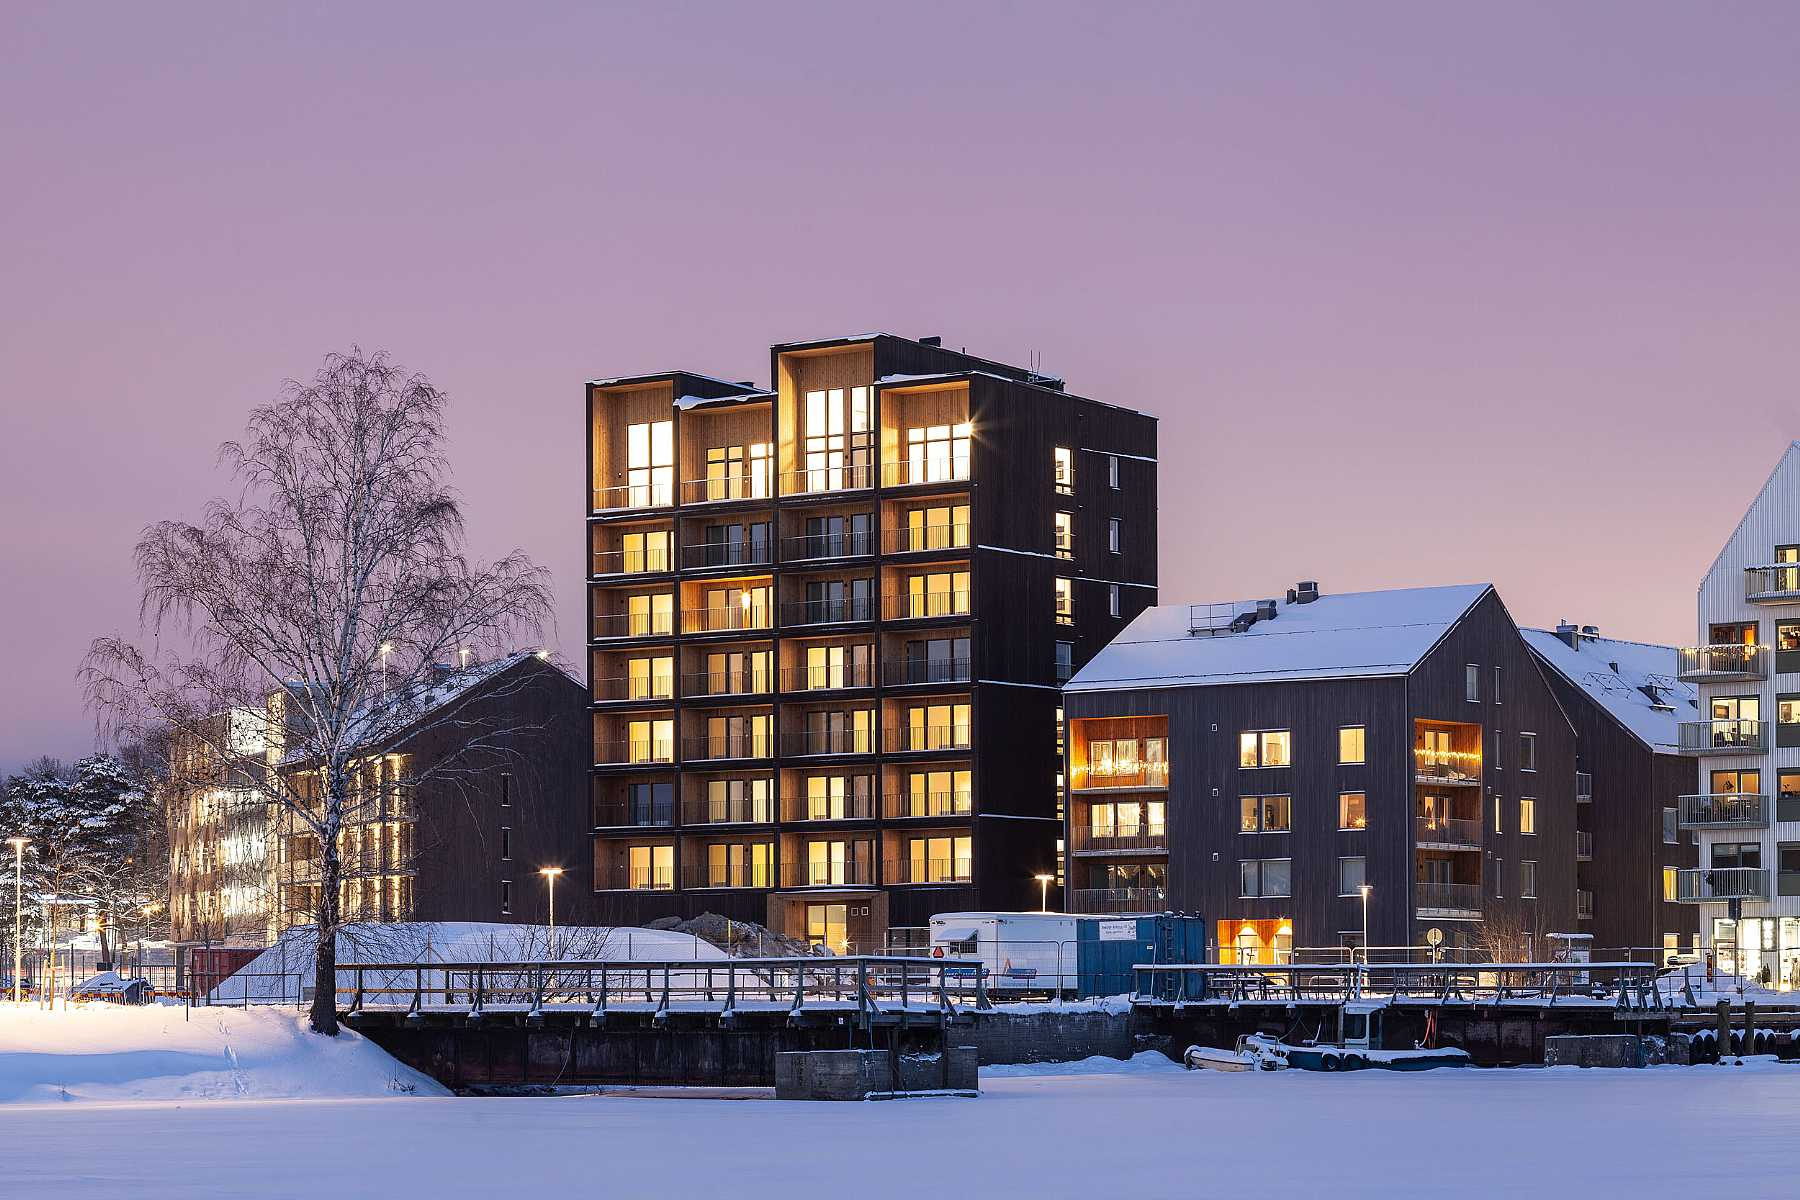 А это 9-этажный деревянный дом в Вестеросе (Швеция), построенный в 2019 году. Высотка полностью сделана из клееных многослойных деревянных панелей